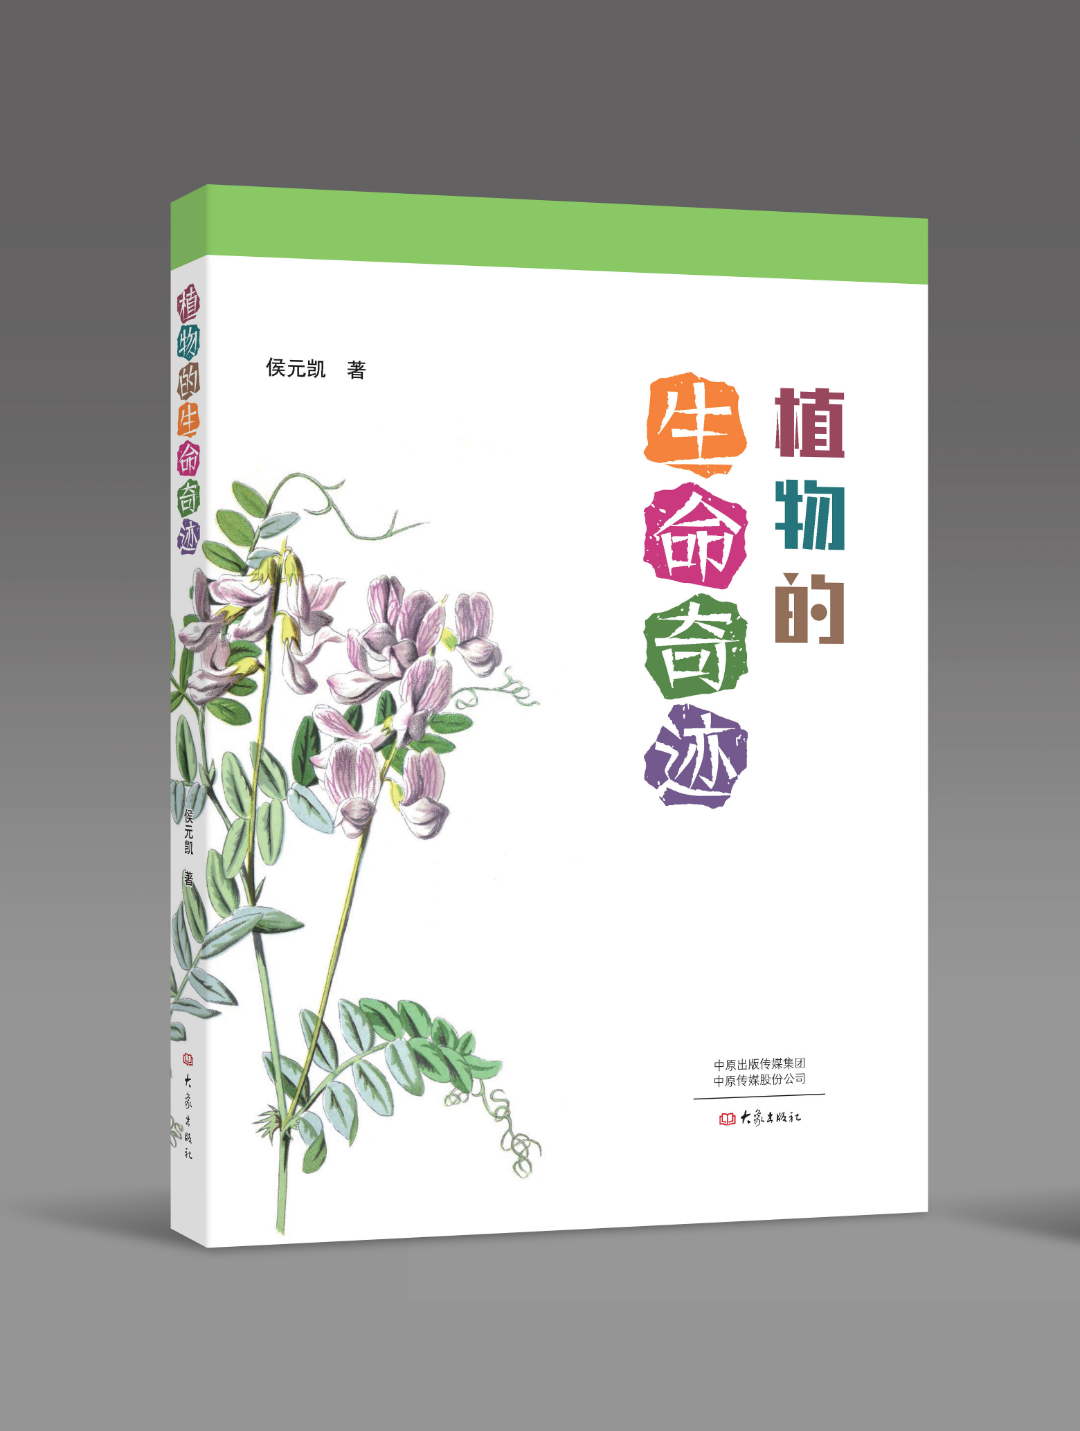 知识盛宴，不可错过！中国植物科普大讲堂4月8日将在郑州绿博园开讲！